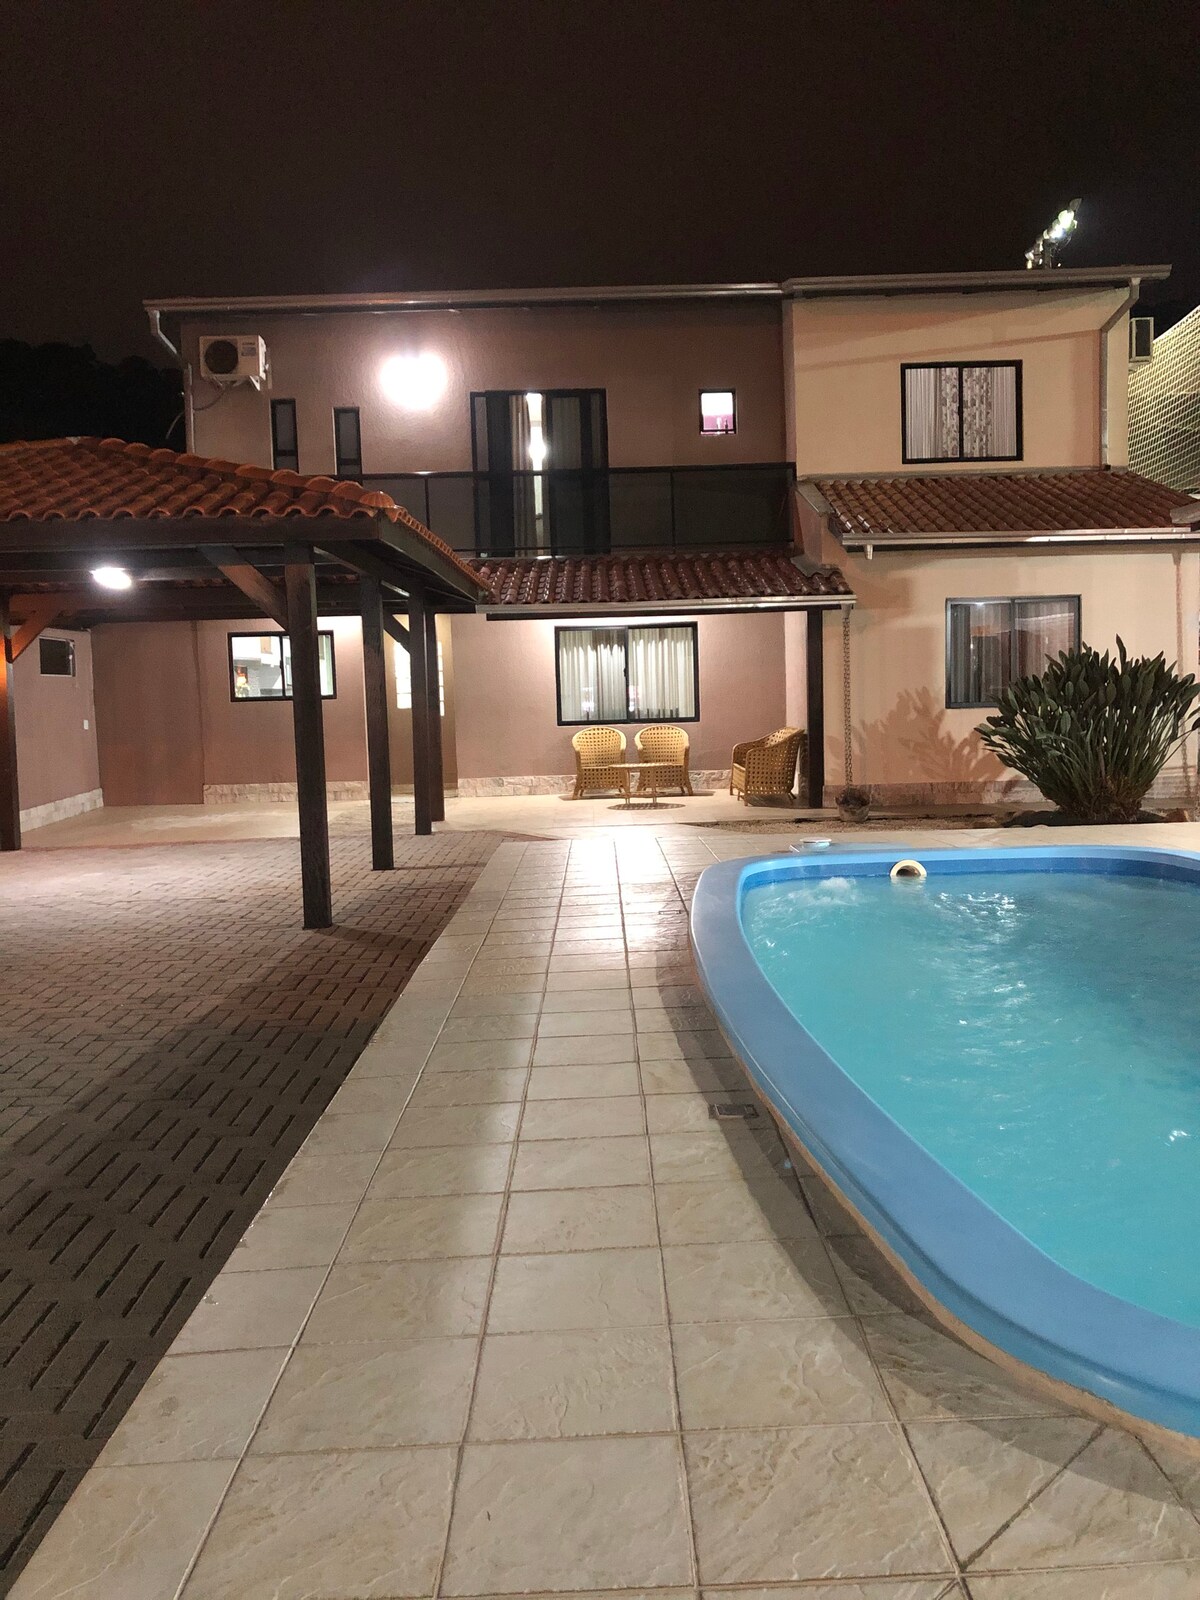 Casa com piscina Balneário Camboriú